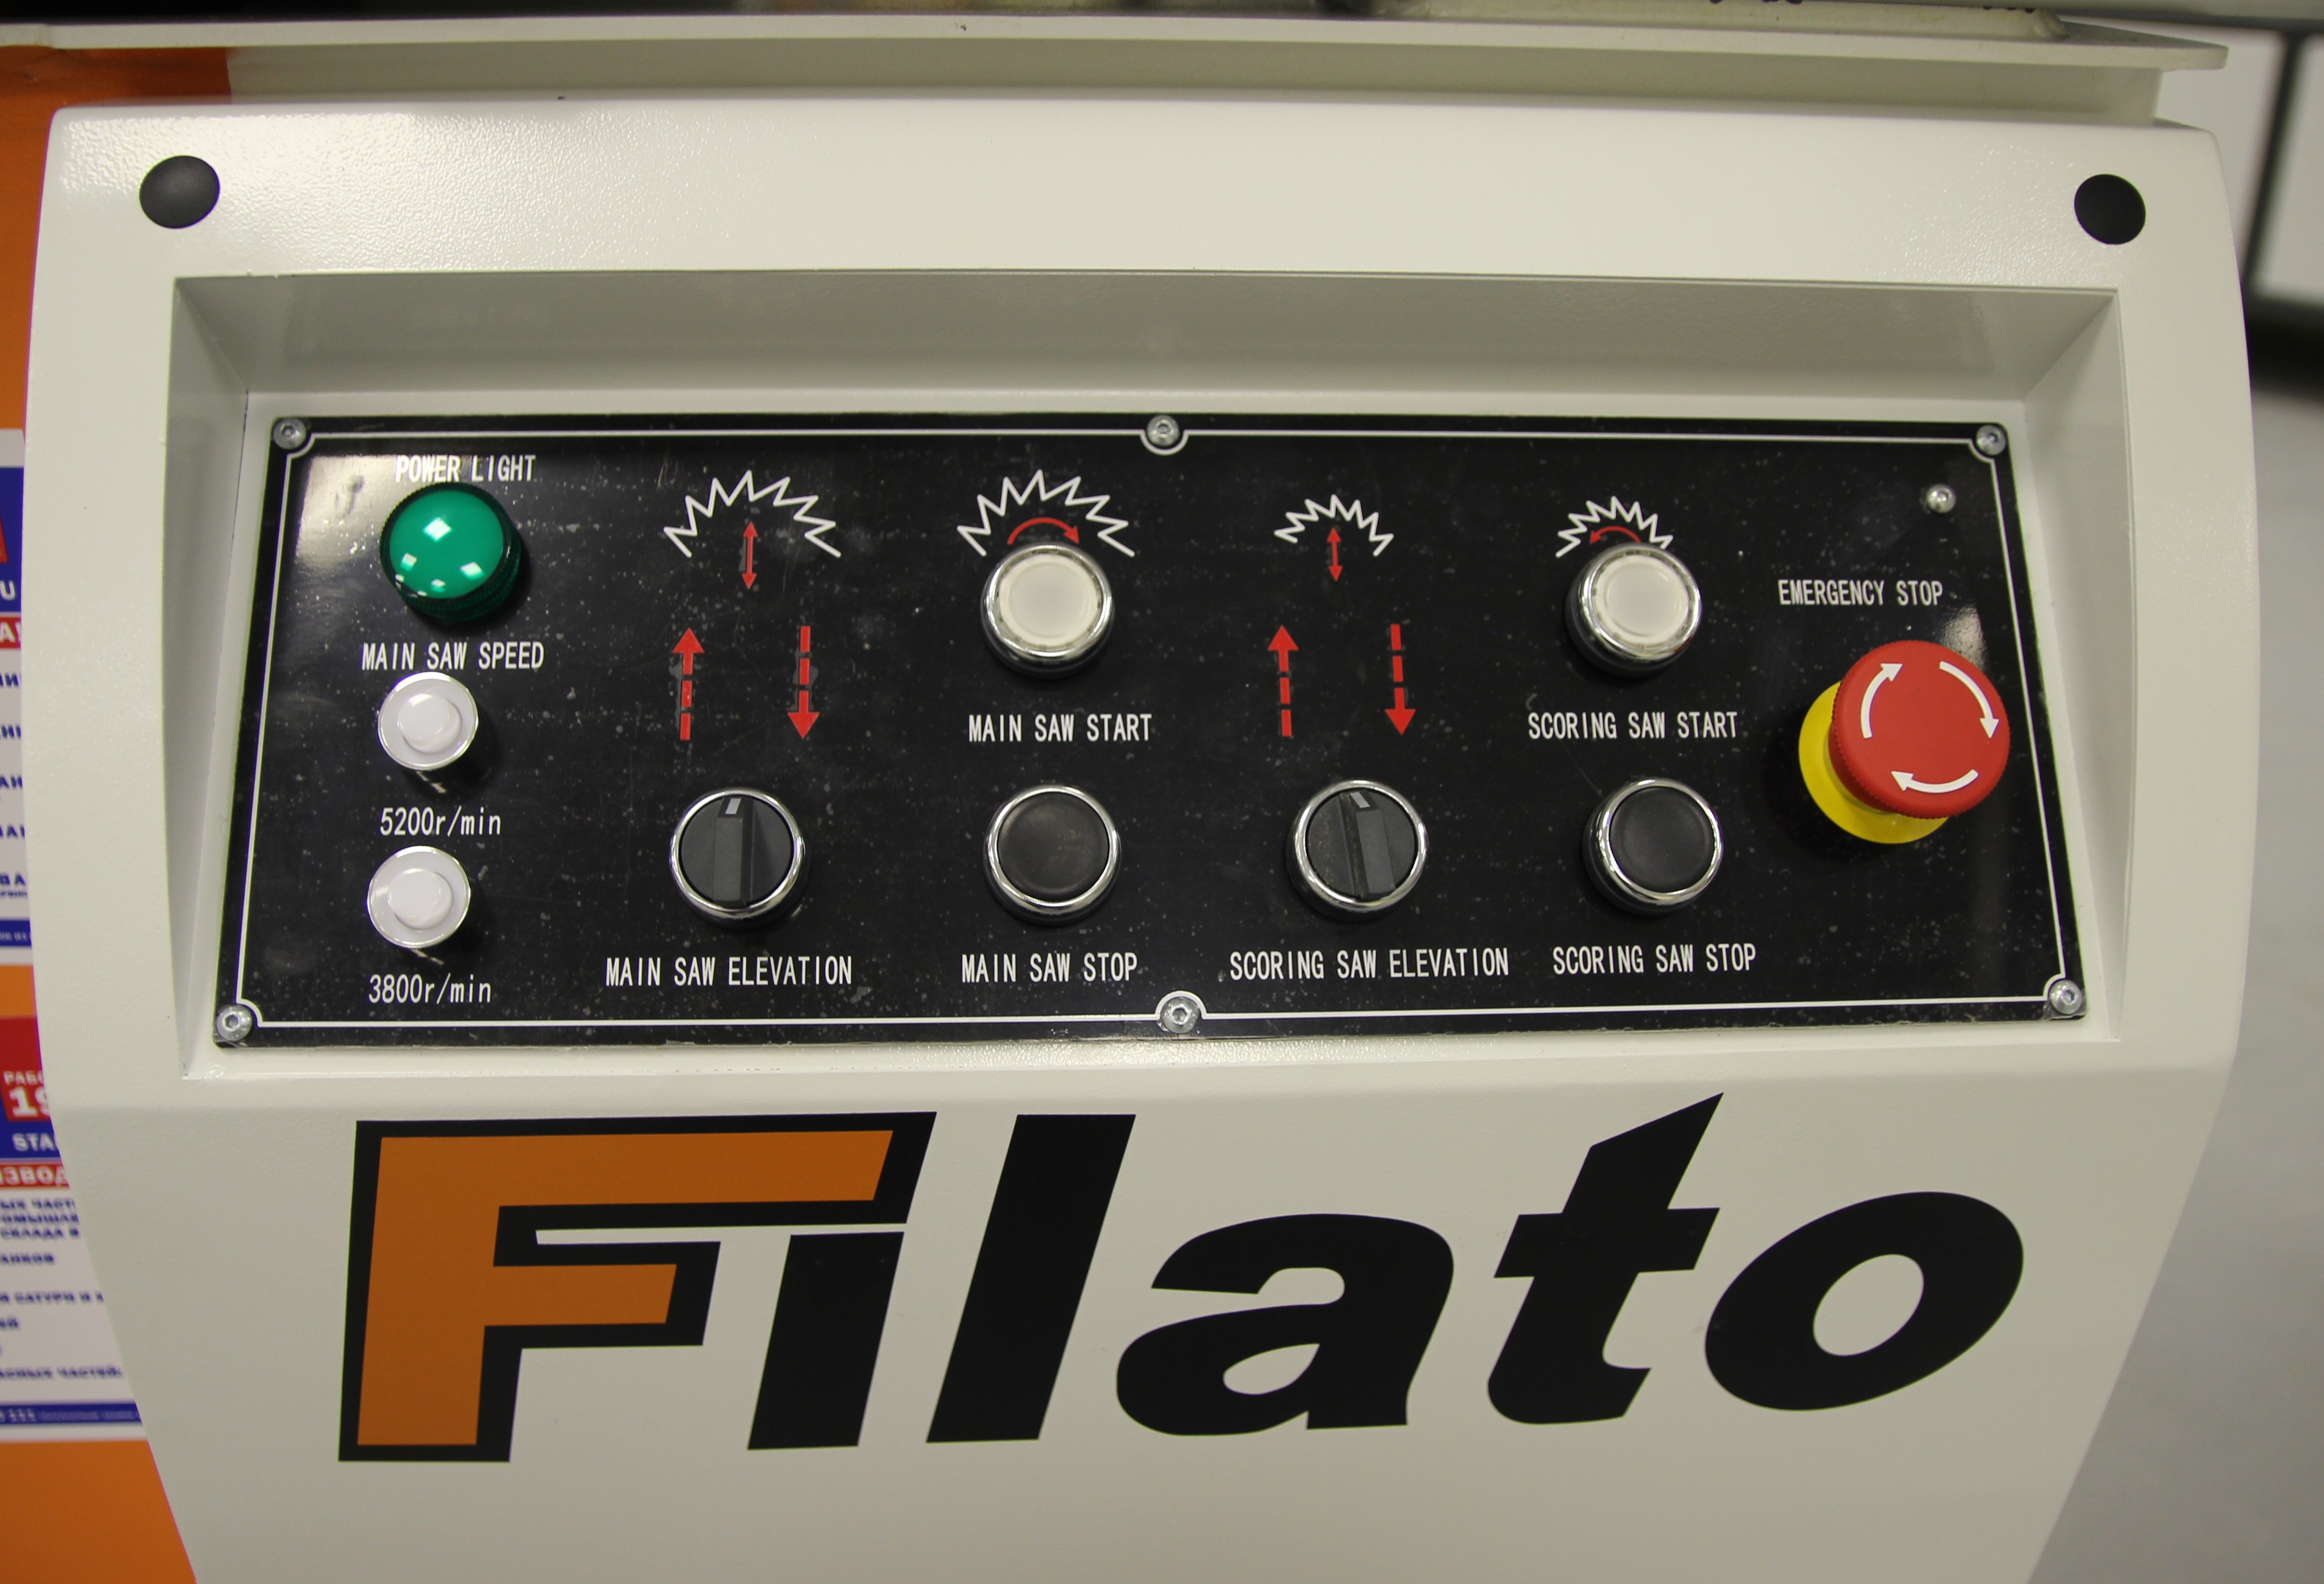 Форматно-раскроечный станок FILATO FL-3200 MAXI